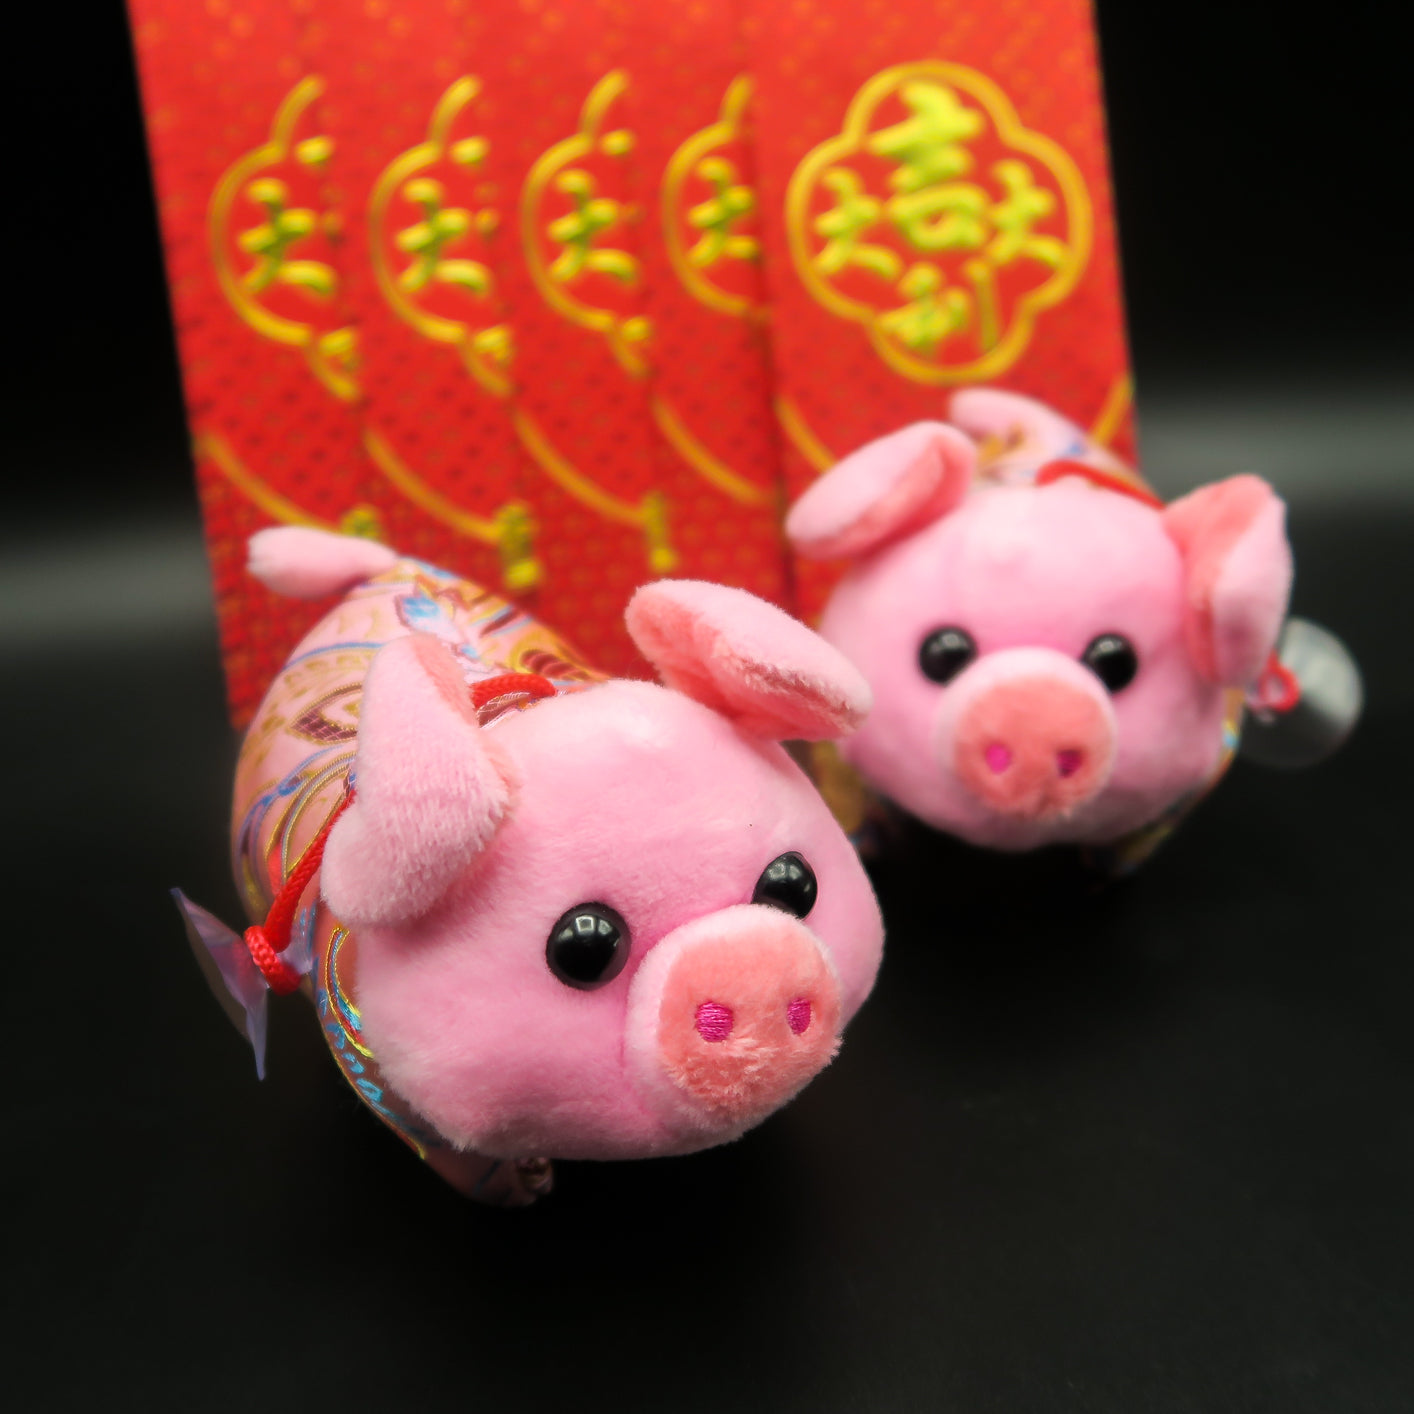 ตุ๊กตาลูกหมู ร่ำรวย หมูคู่ หมูโชคดี - Chinese Pigs 790-920